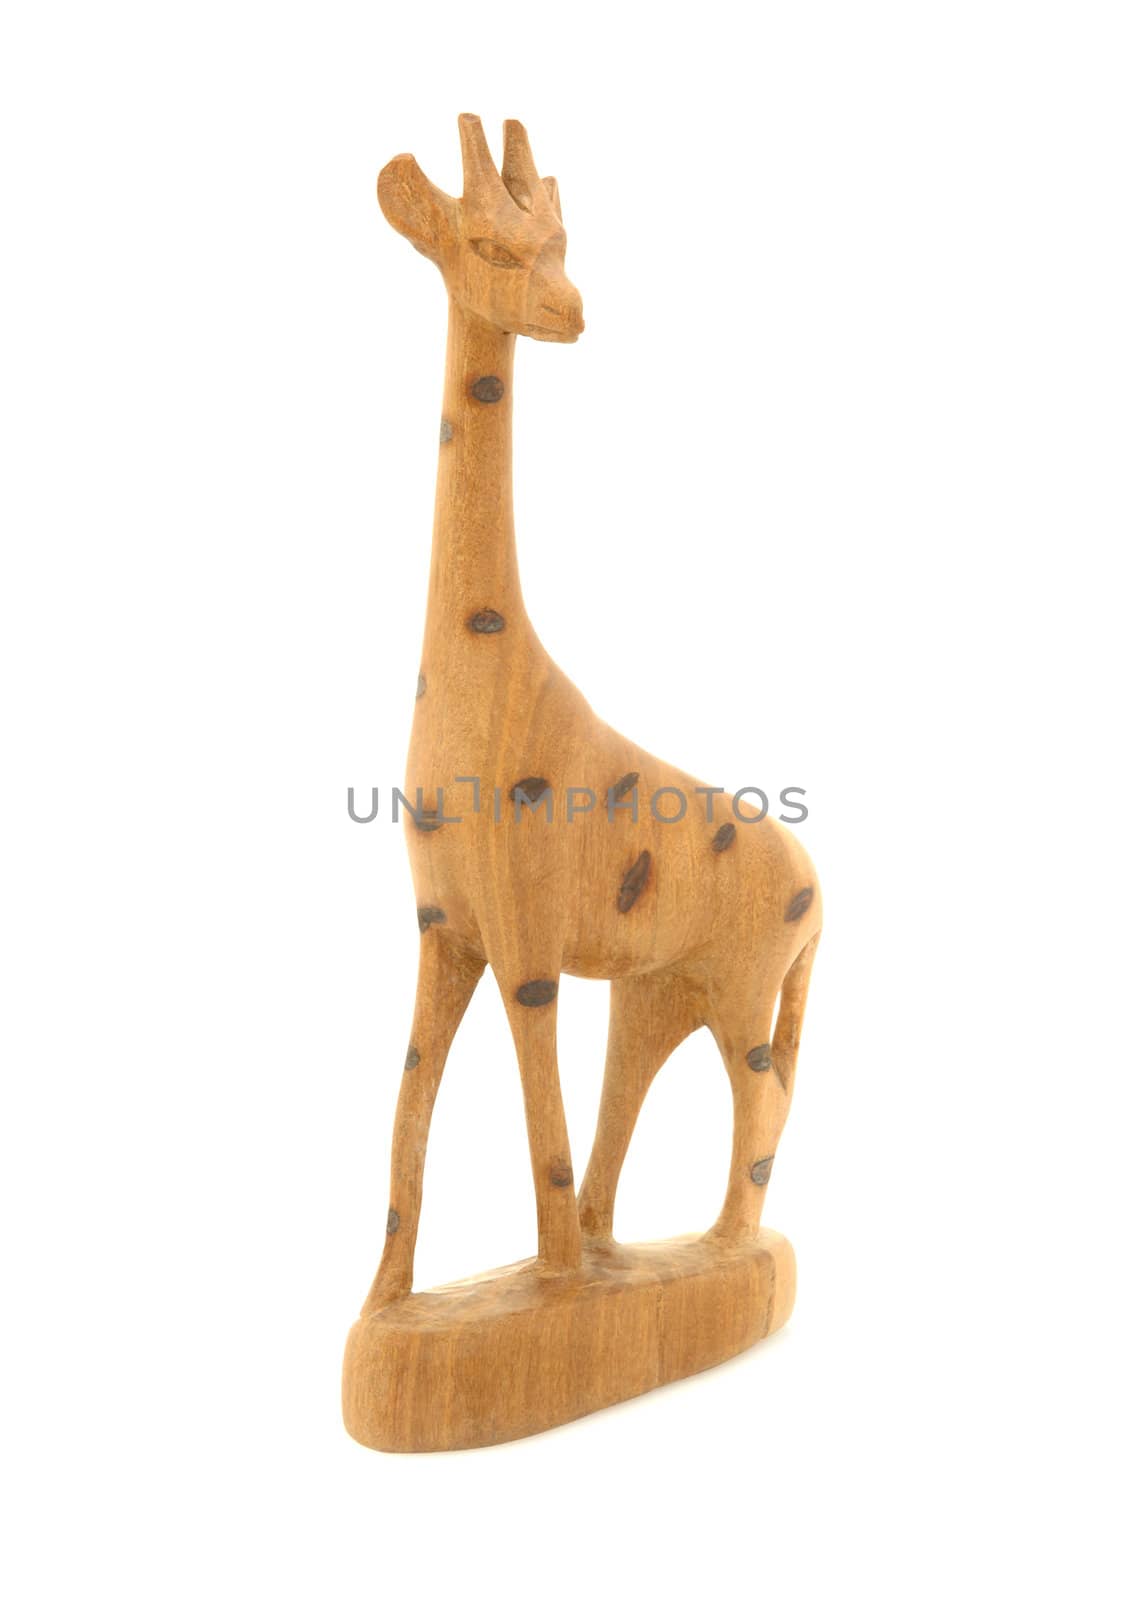 Antique wooden statue of a giraffe.